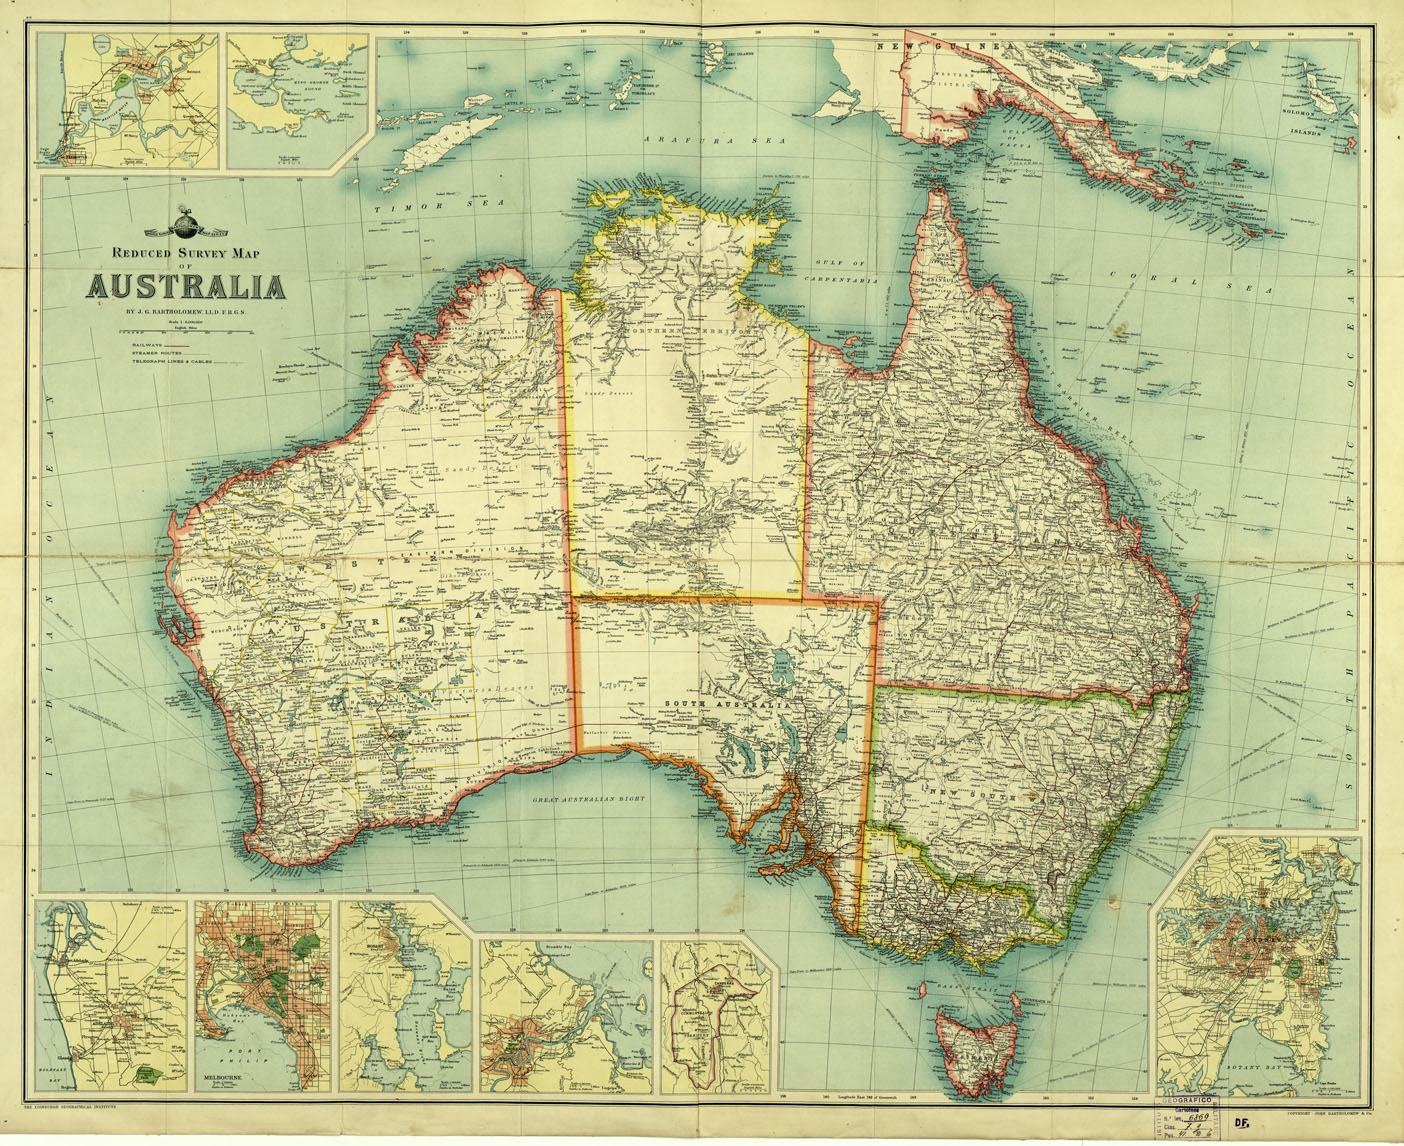 (N:16748) AUSTRALIA - REDUCED SURVEY MAP OF AUSTRALIA (B0013916) Carte e stampe antiche: riproduzione digitale a 300 DPI